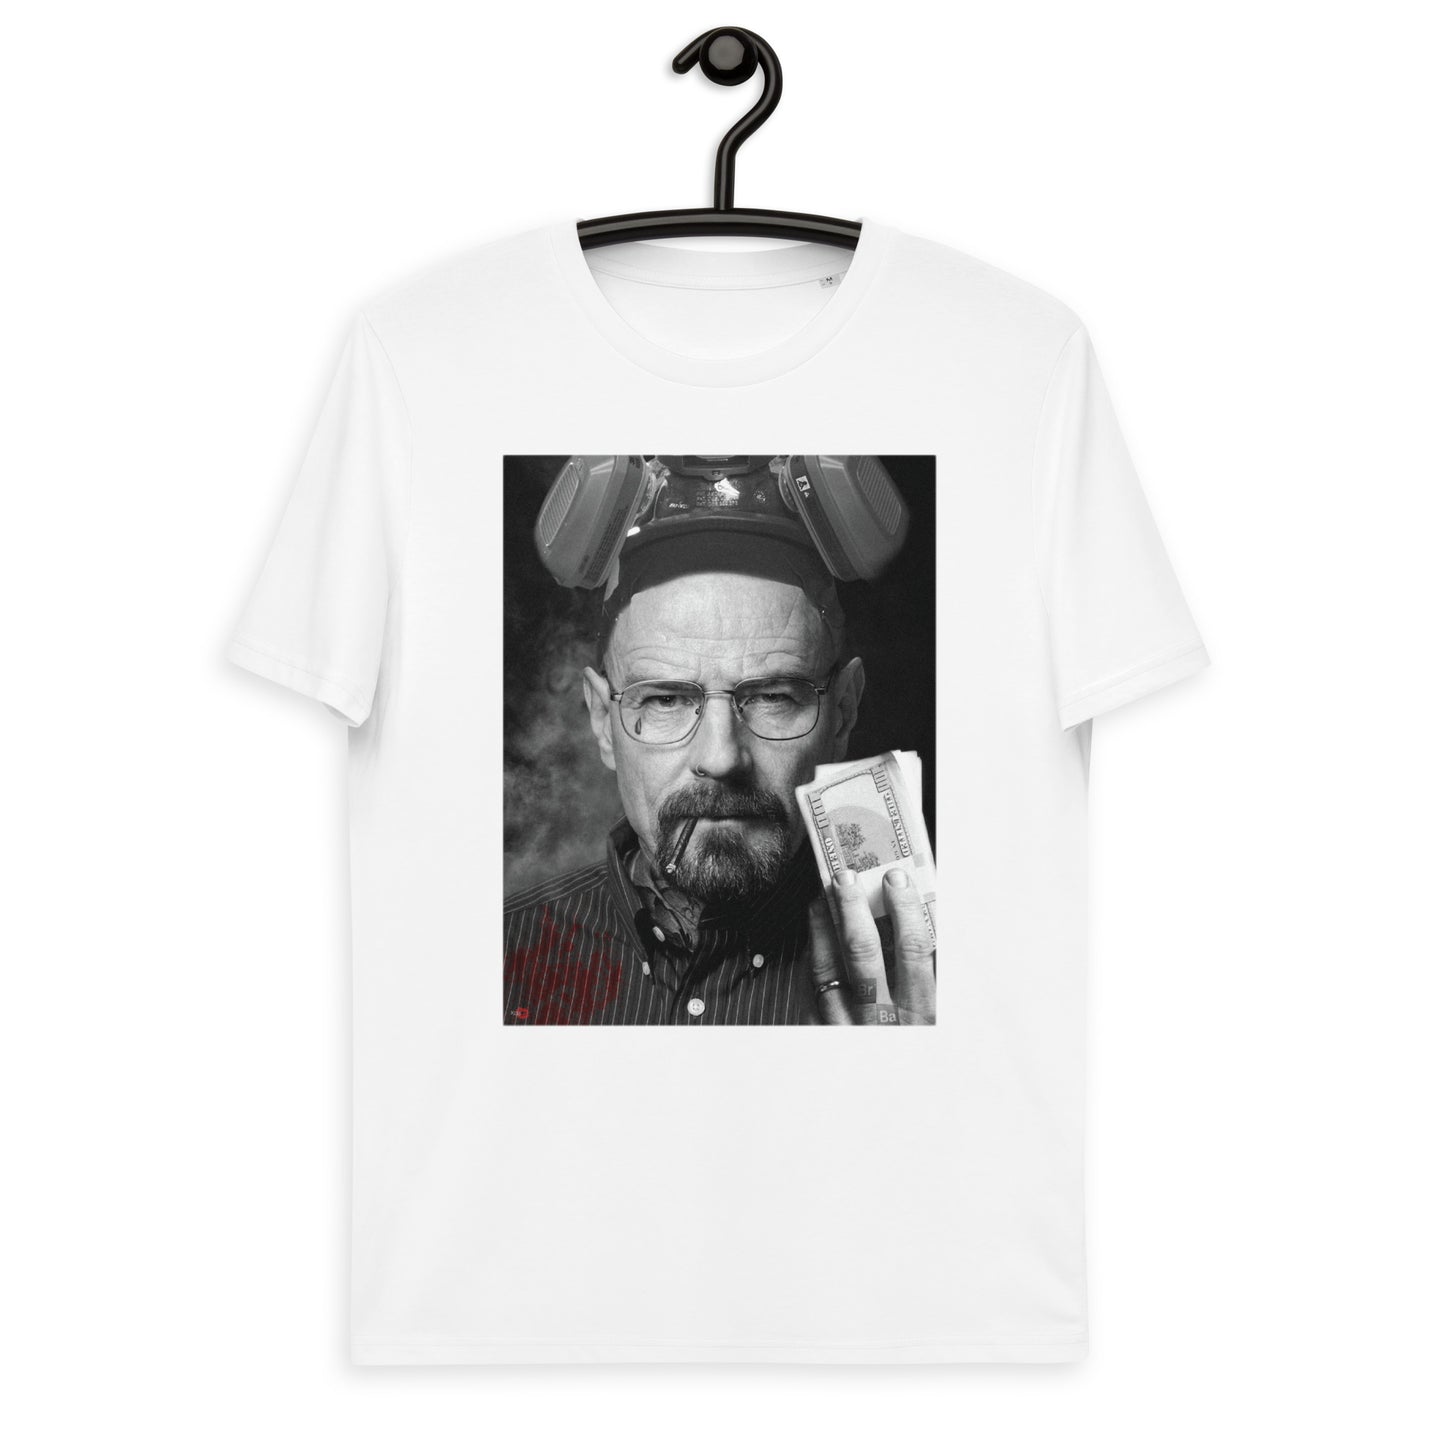 Walter KiSS Unisex organic cotton t-shirt - Heisenberg Breaking Bad Inspired White Tattoo